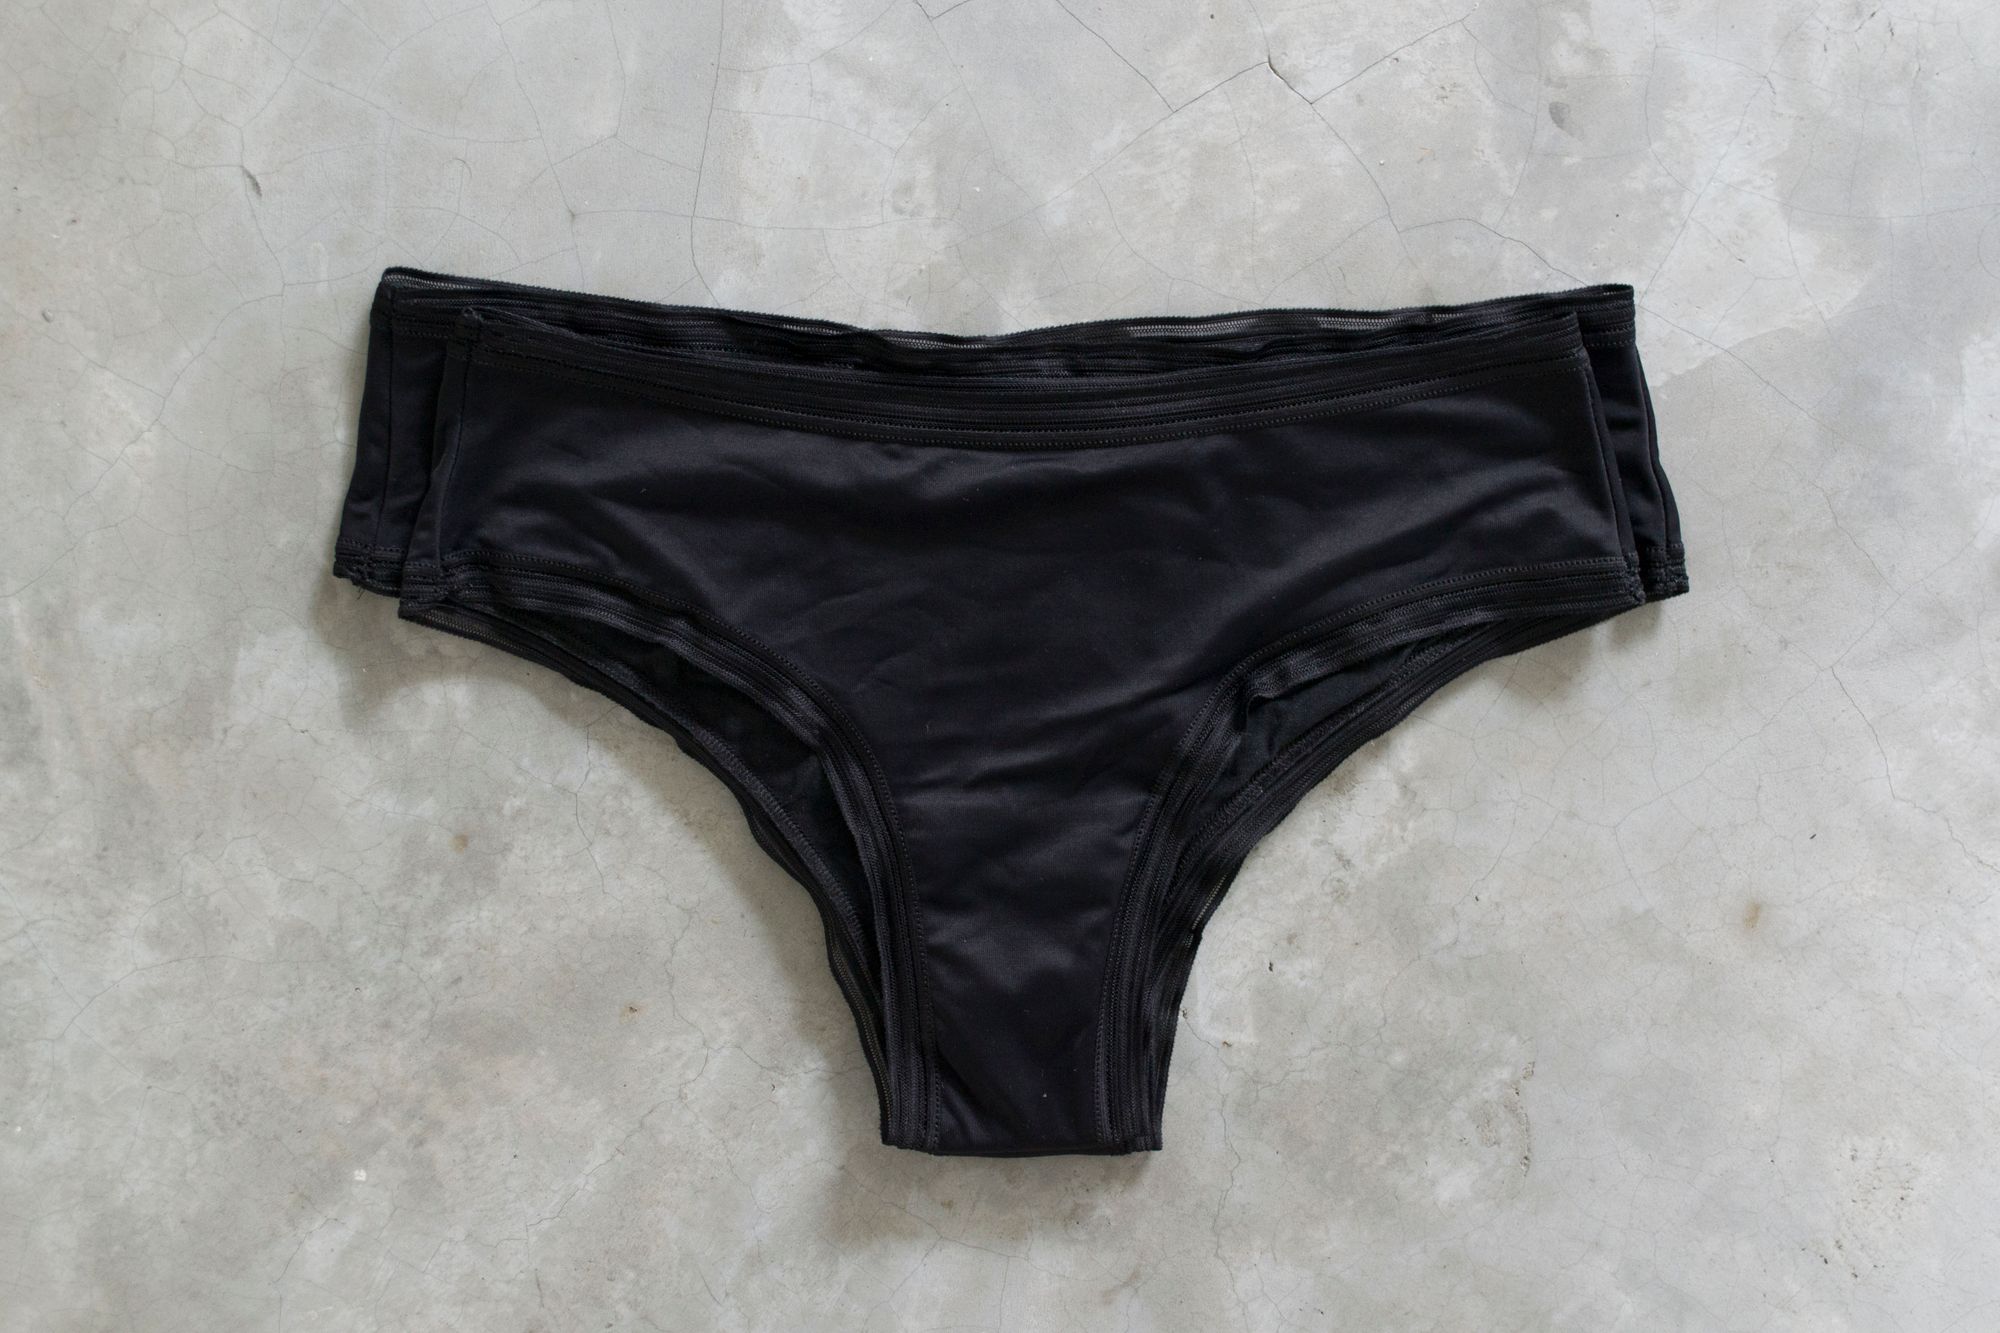 THINX Period Underwear Review